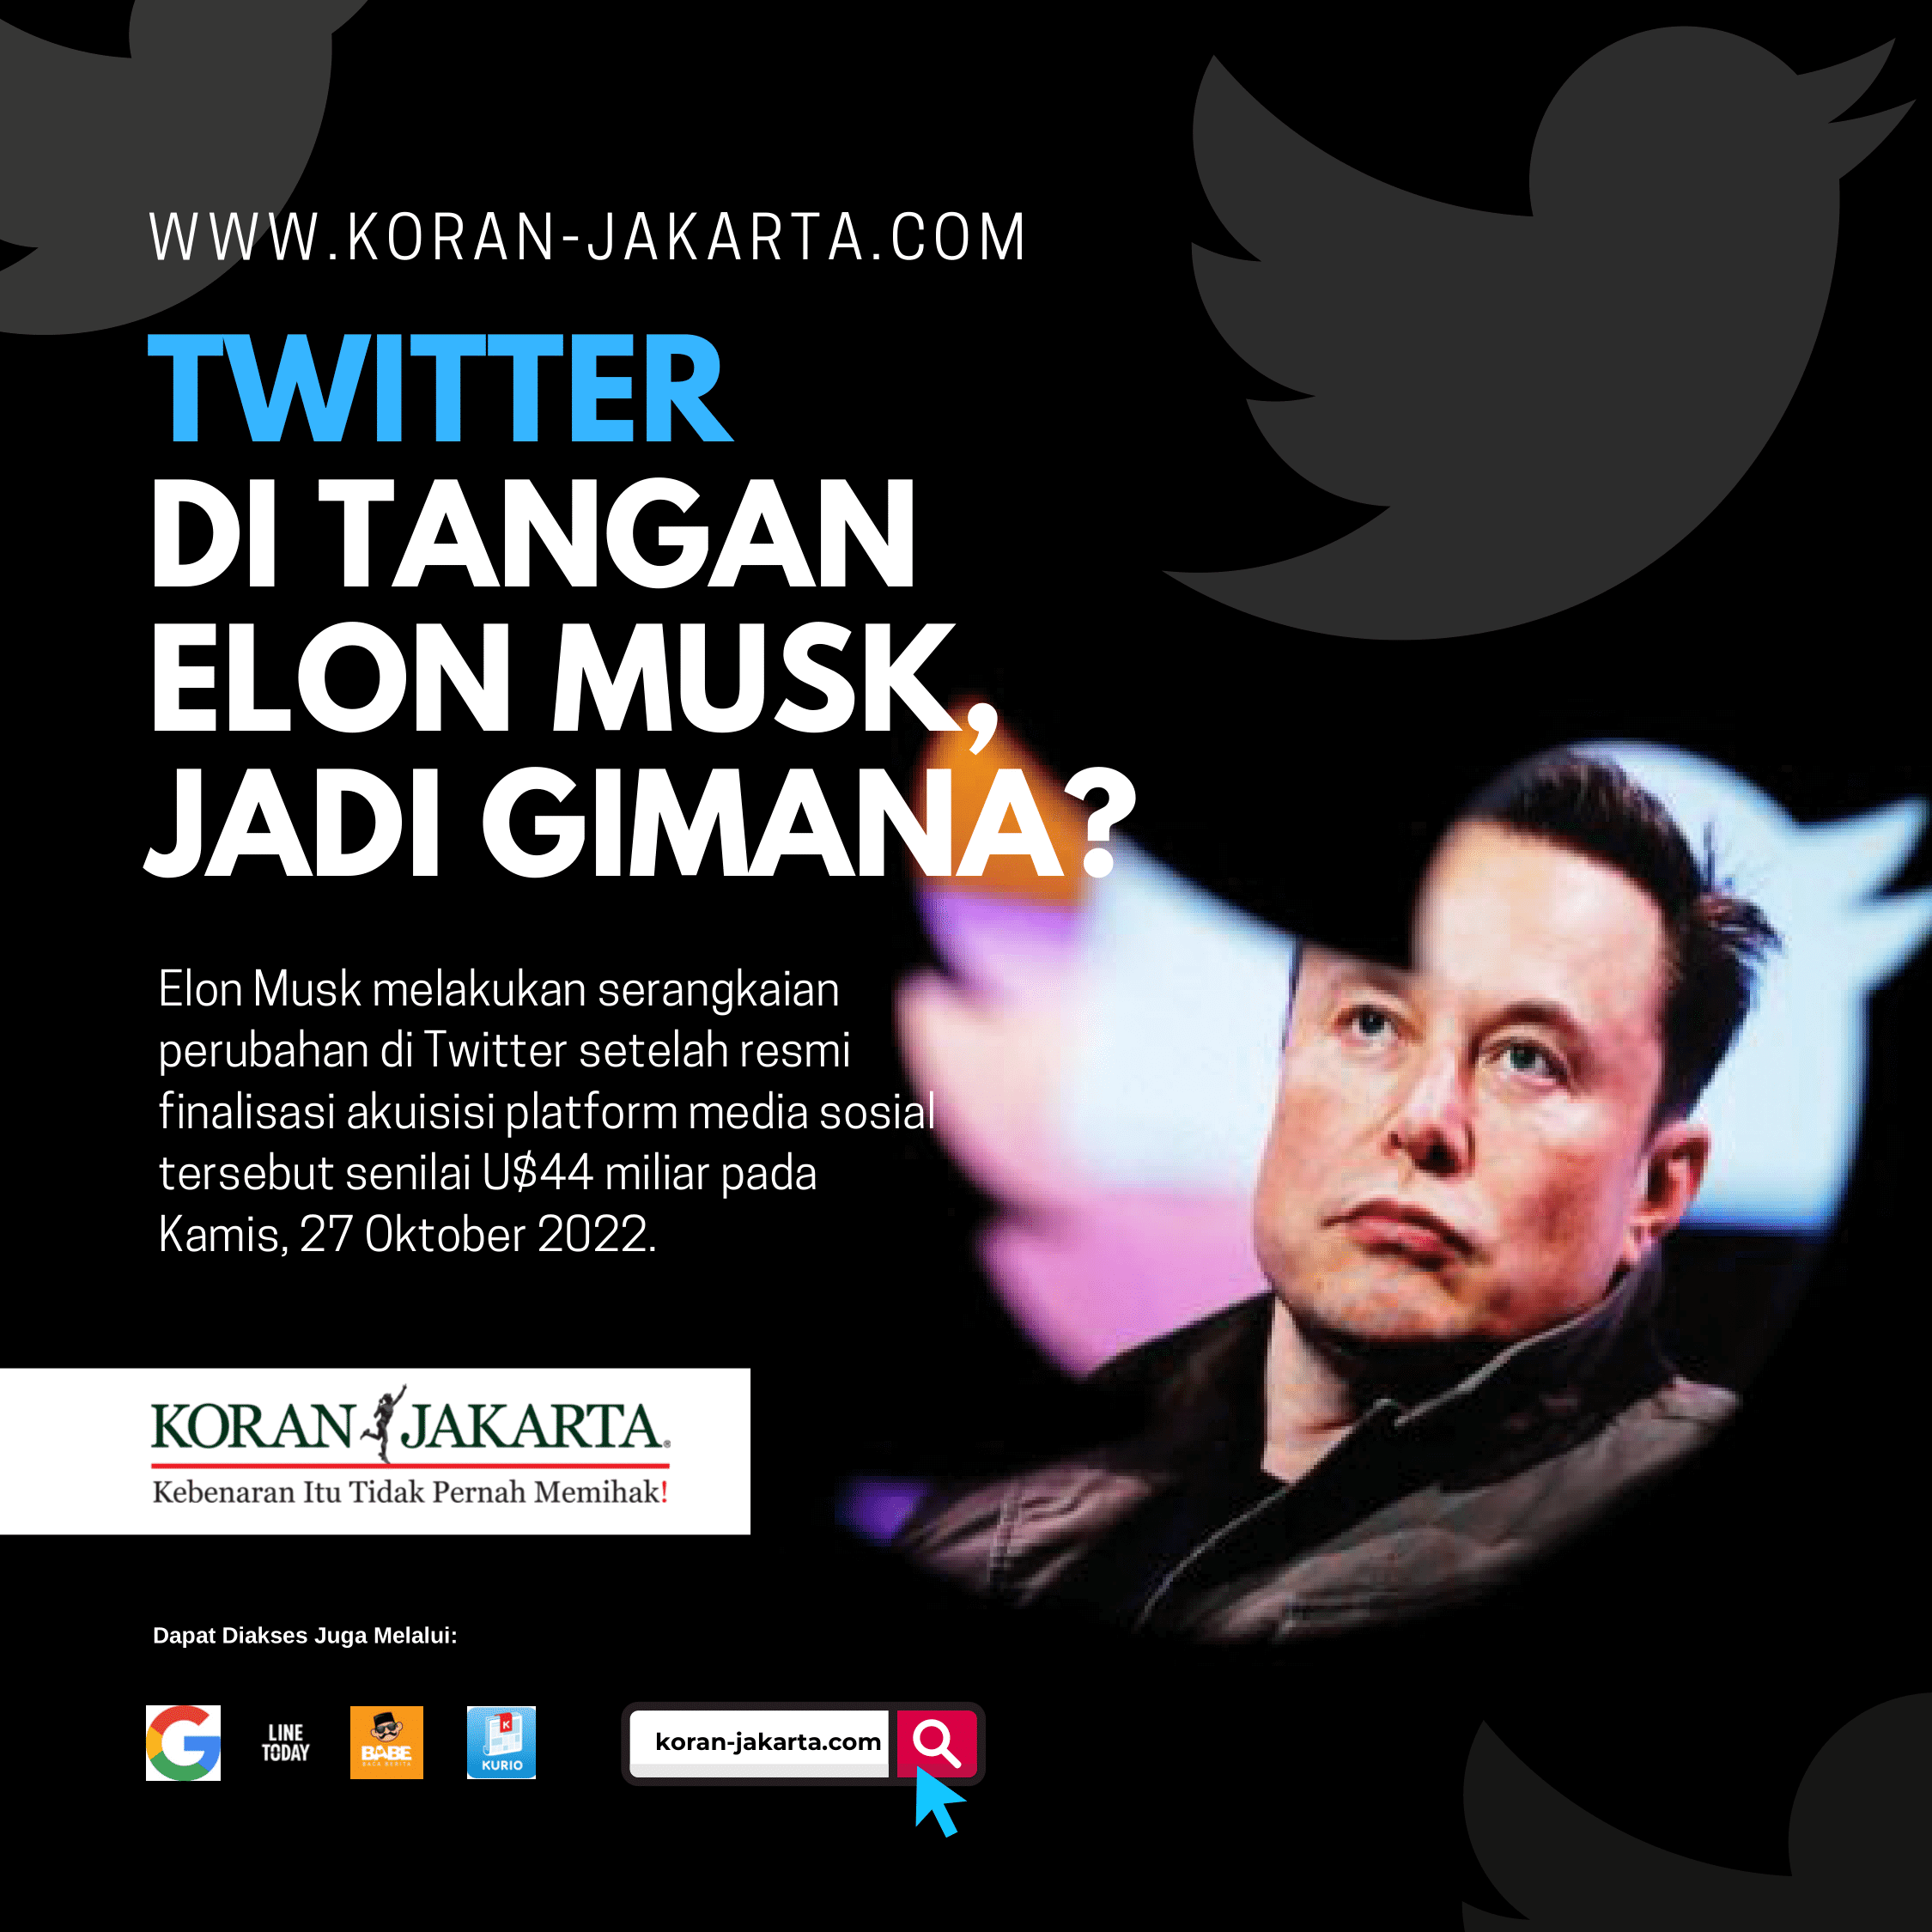 Twitter di Tangan Elon Musk Jadi Gimana?